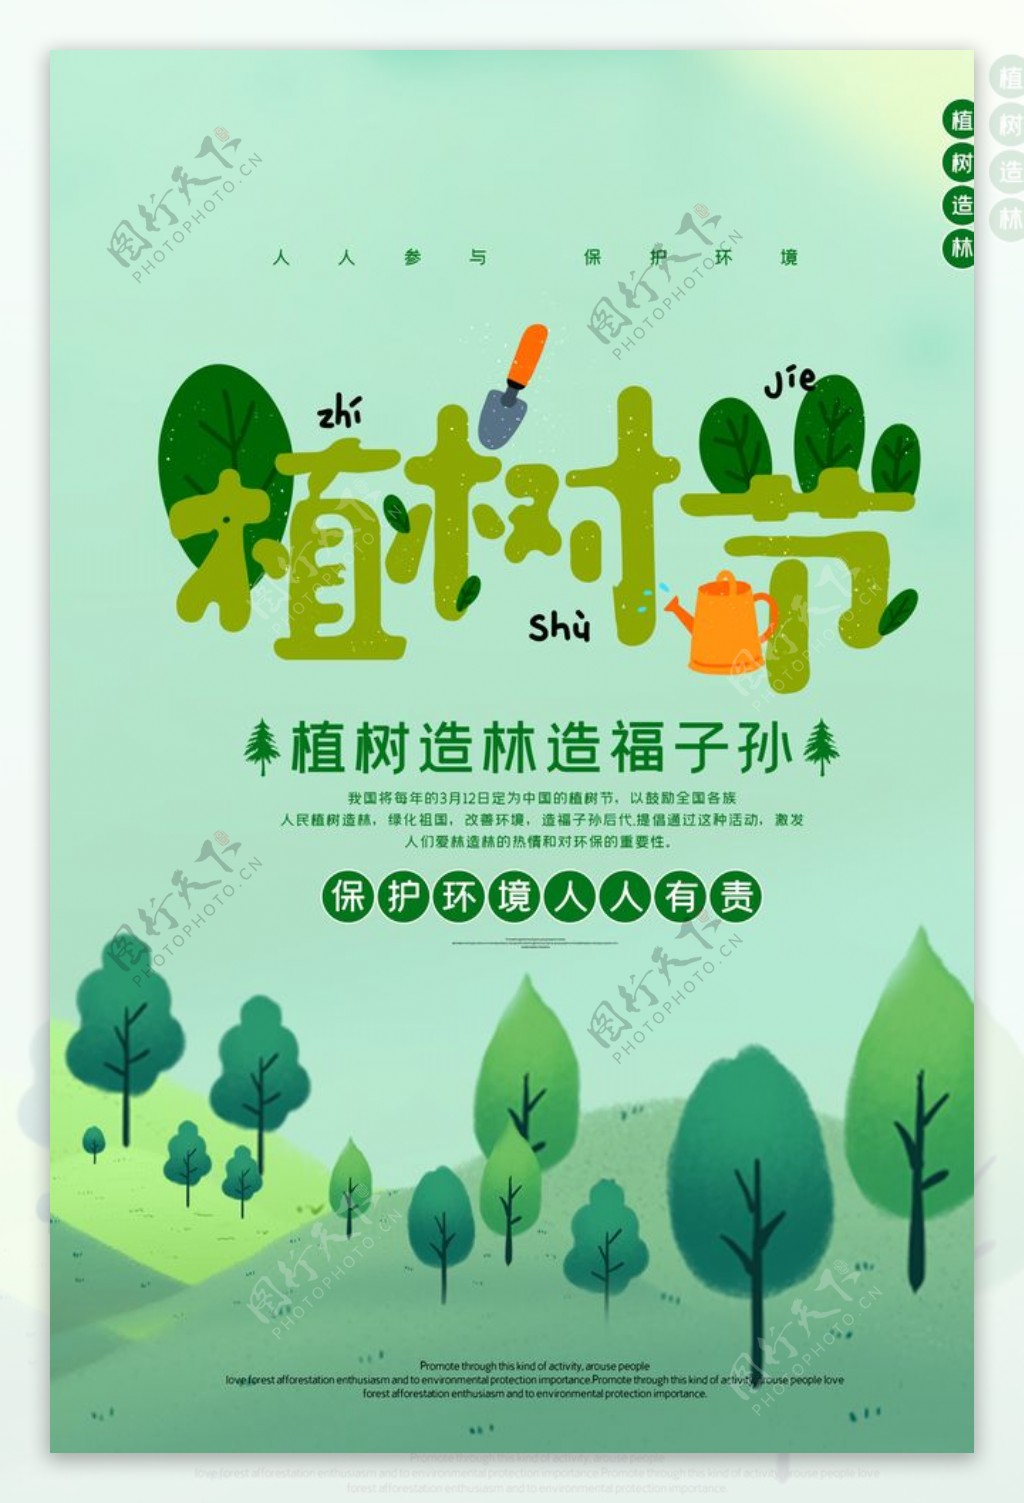 植树节节日公益宣传活动海报素材